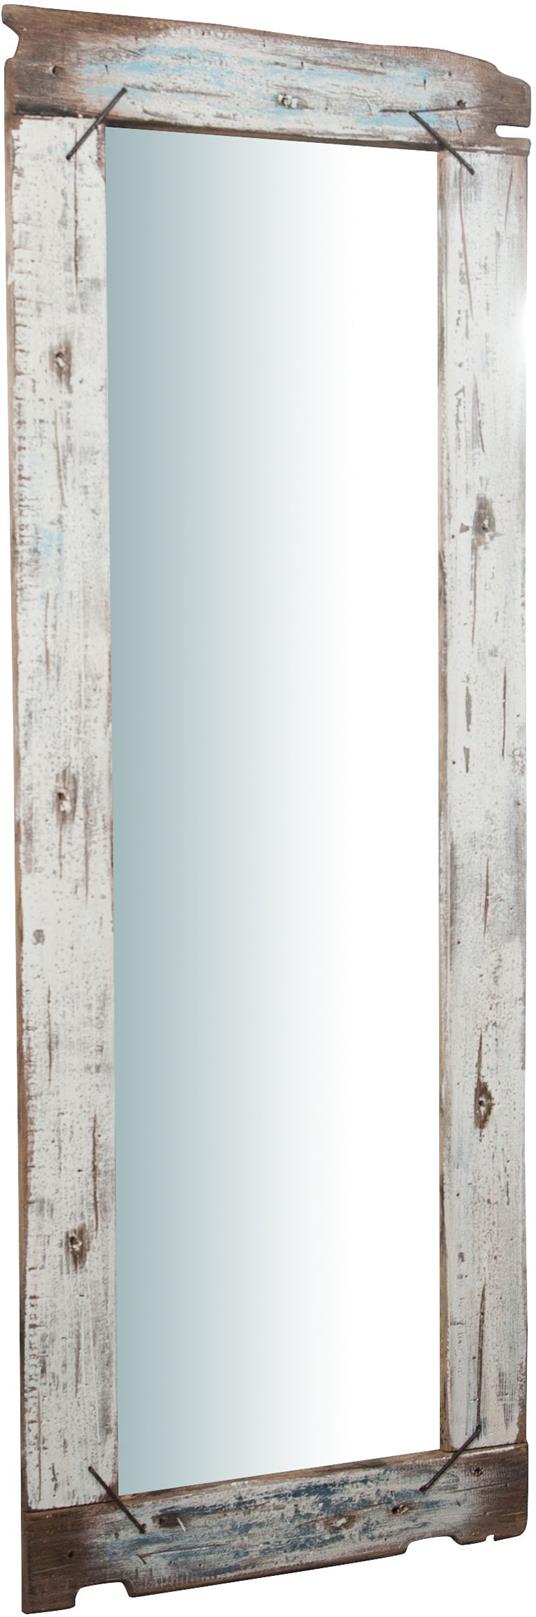 Specchio da parete lungo 180x66x4 cm Specchio Shabby dipinto a mano Adatto  come specchiera bagno o specchio camera da letto - Biscottini - Idee regalo  | IBS